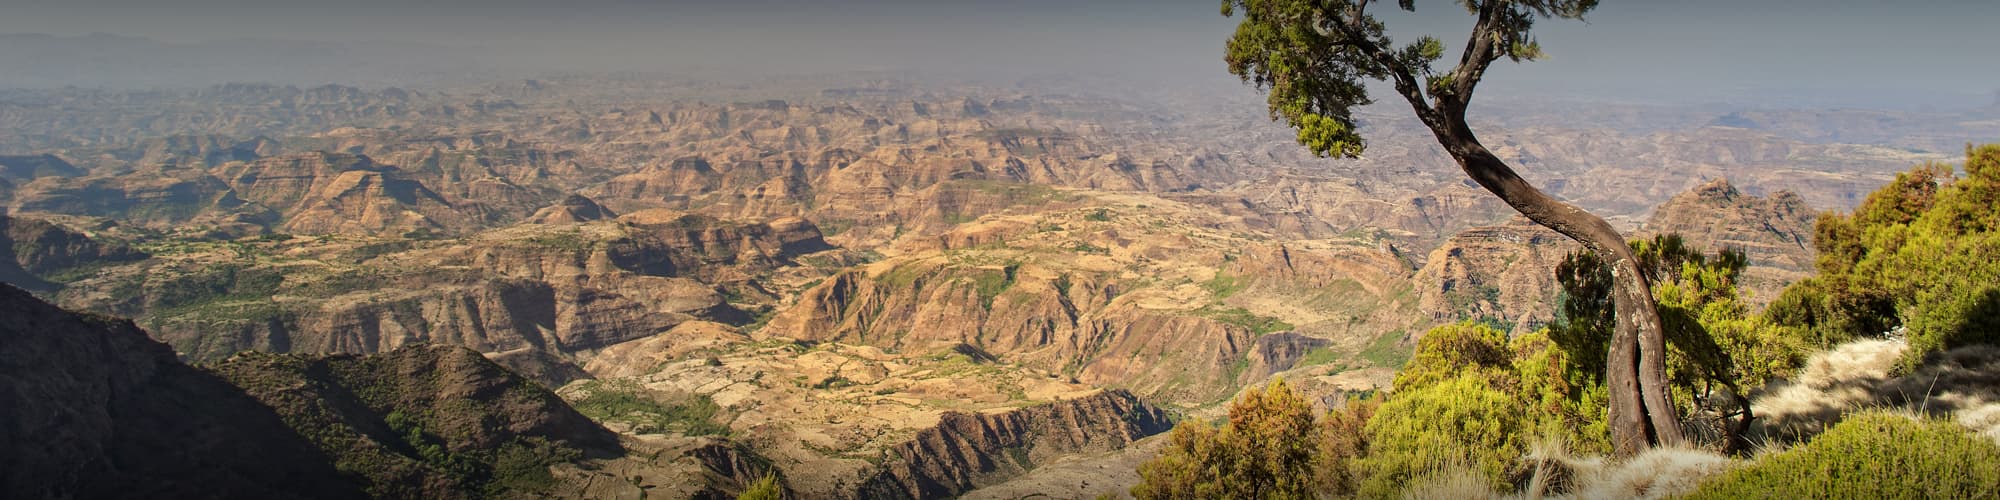 Voyage en groupe Ethiopie © Guenter Guni / iStock